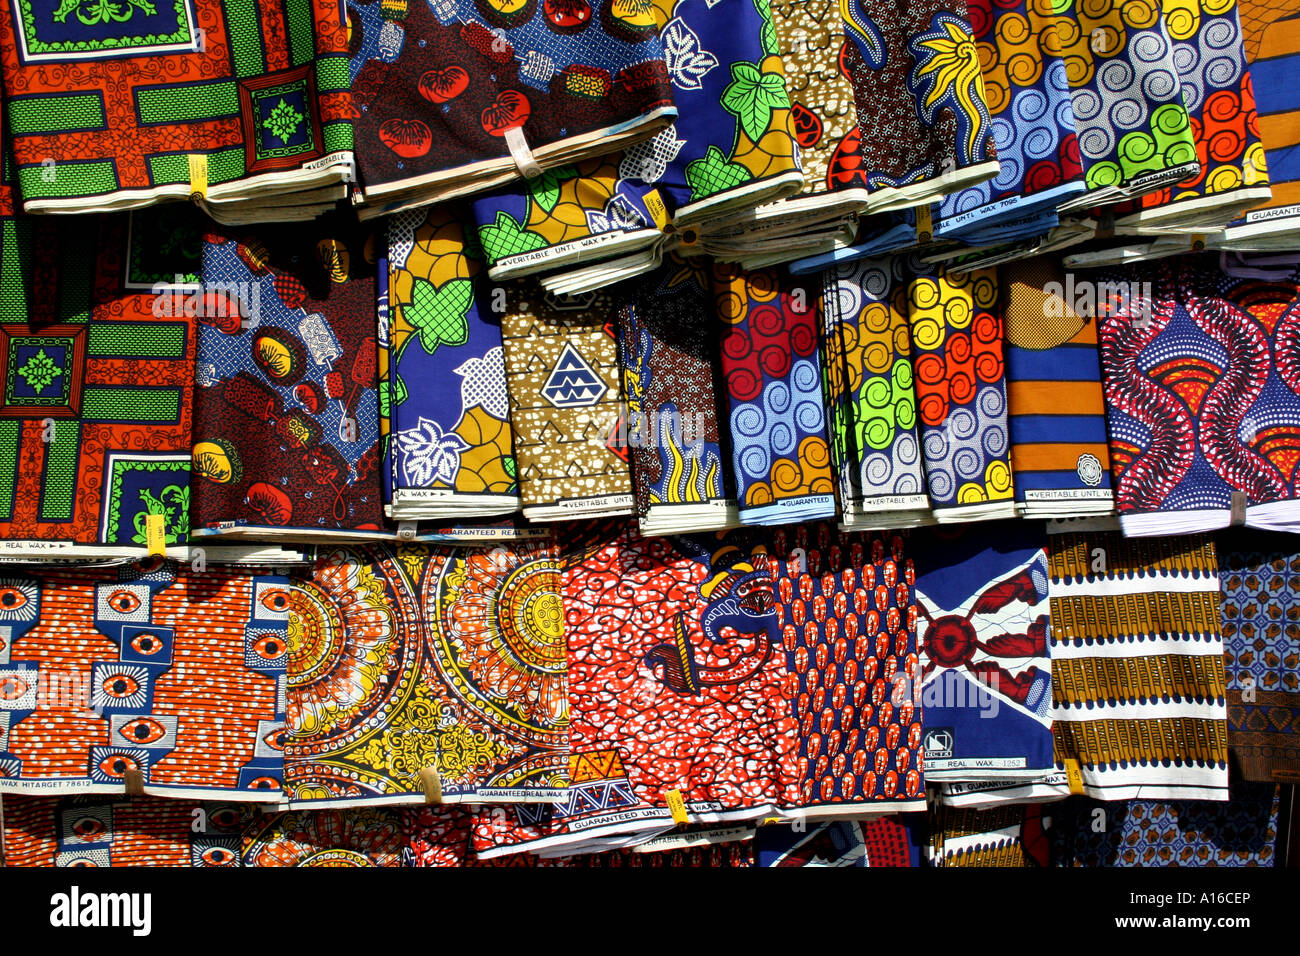 https://c8.alamy.com/compes/a16cep/telas-africanas-para-la-venta-en-el-mercado-central-de-lome-togo-africa-occidental-a16cep.jpg